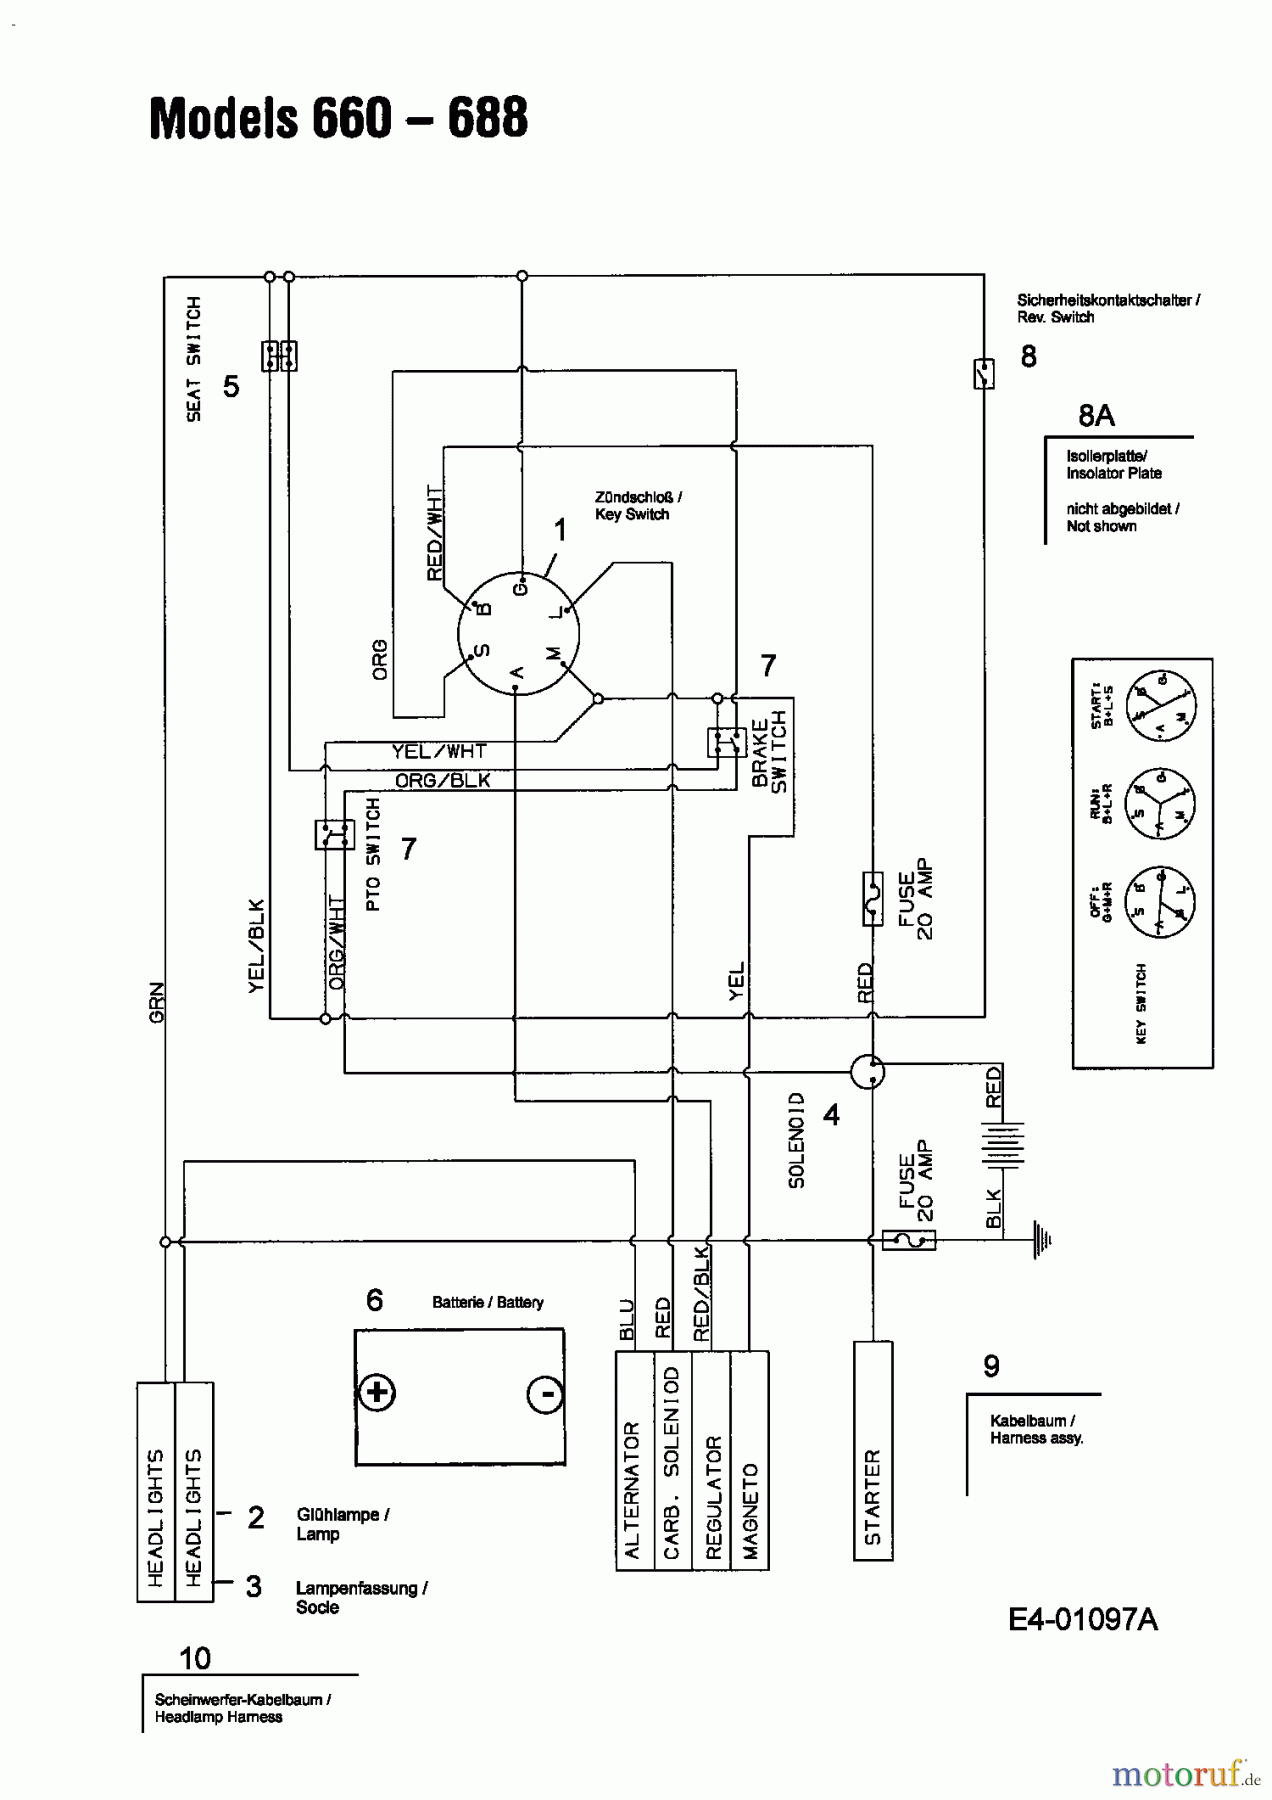  Mastercut Tracteurs de pelouse VI 145/107 13AA685G659  (2003) Plan électrique